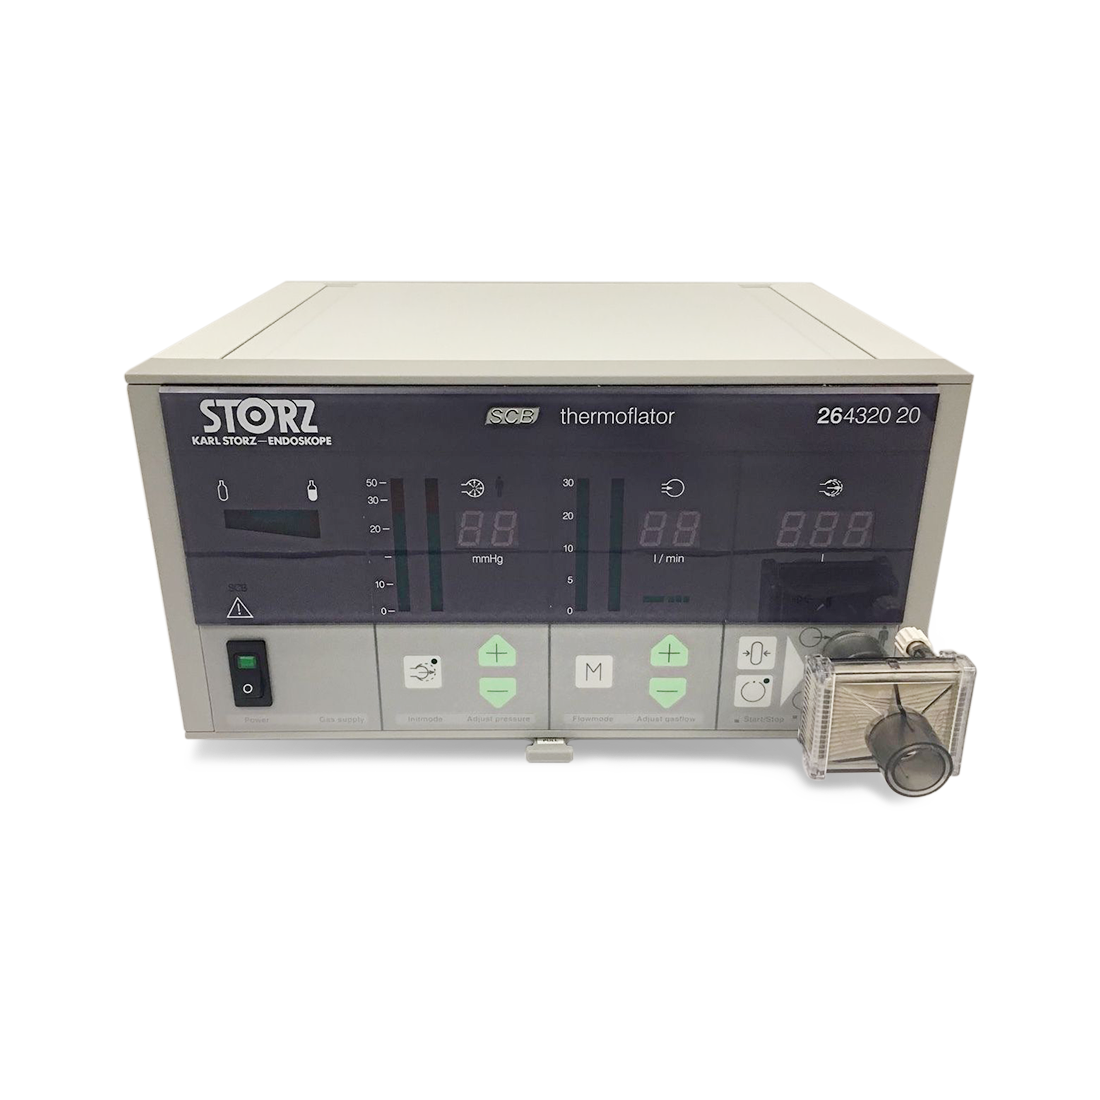 Storz Thermoflator 26432020 Insufflator